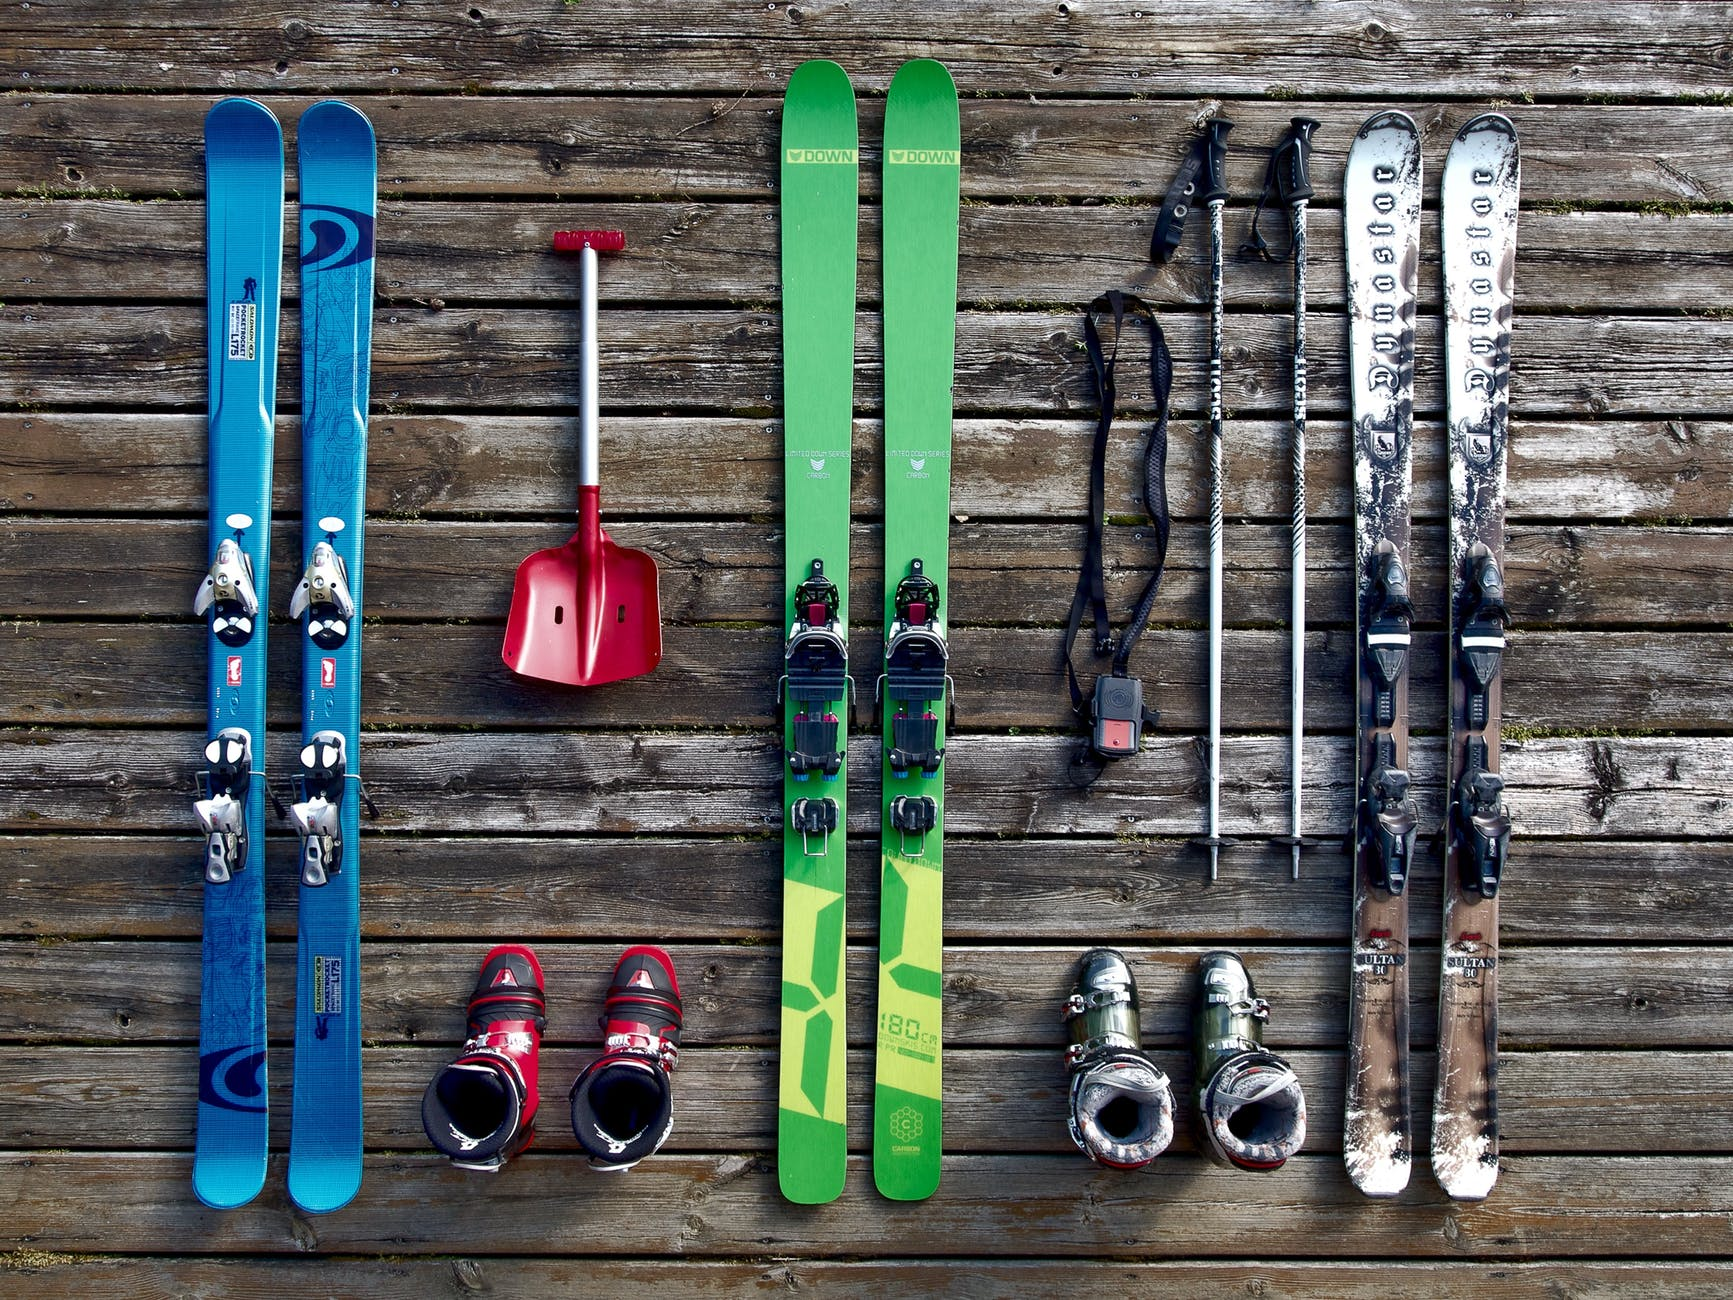 Verplaatsbaar ijsje ruimte Can Your Old Ski Bindings Be Serviced? | FloatingBoard